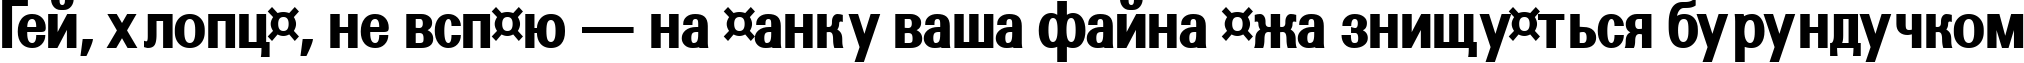 Пример написания шрифтом a_GroticNrExtraBold текста на украинском